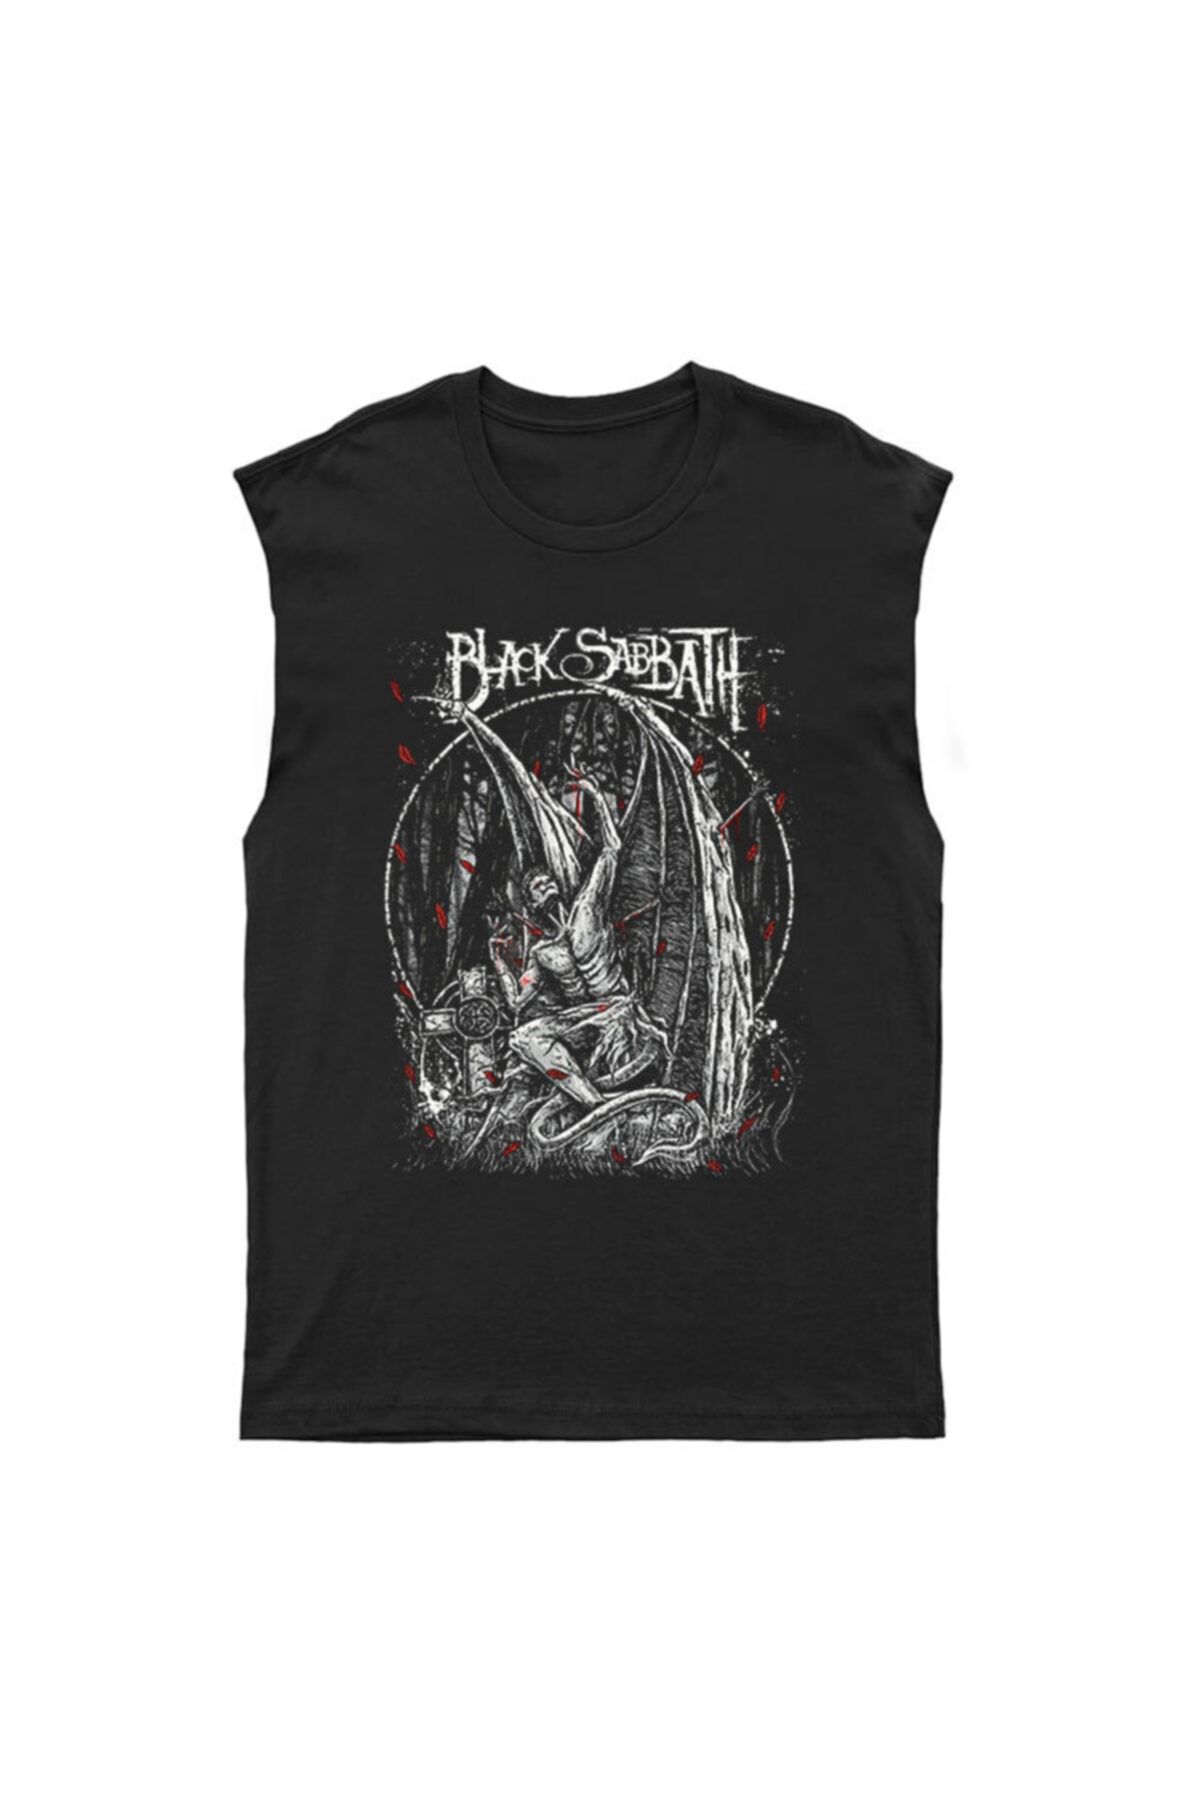 Adrift Black Sabbath Kesik Kol Tişört Kolsuz T-shirt Bkt4523